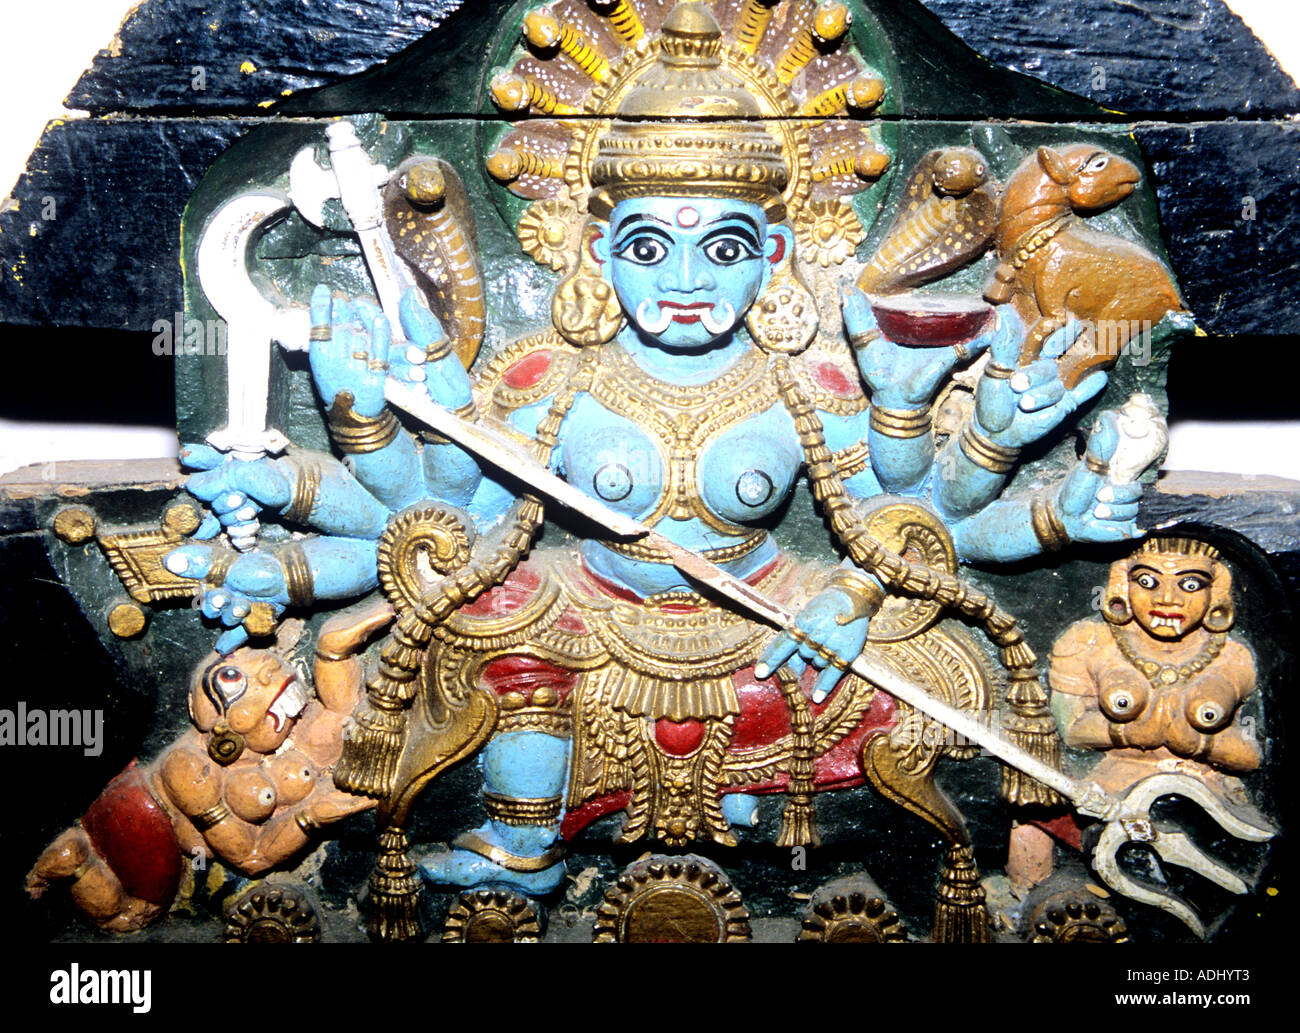 Le dieu hindou Shiva, une gravure dans le Temple Meenakshi à Madurai, Inde Banque D'Images